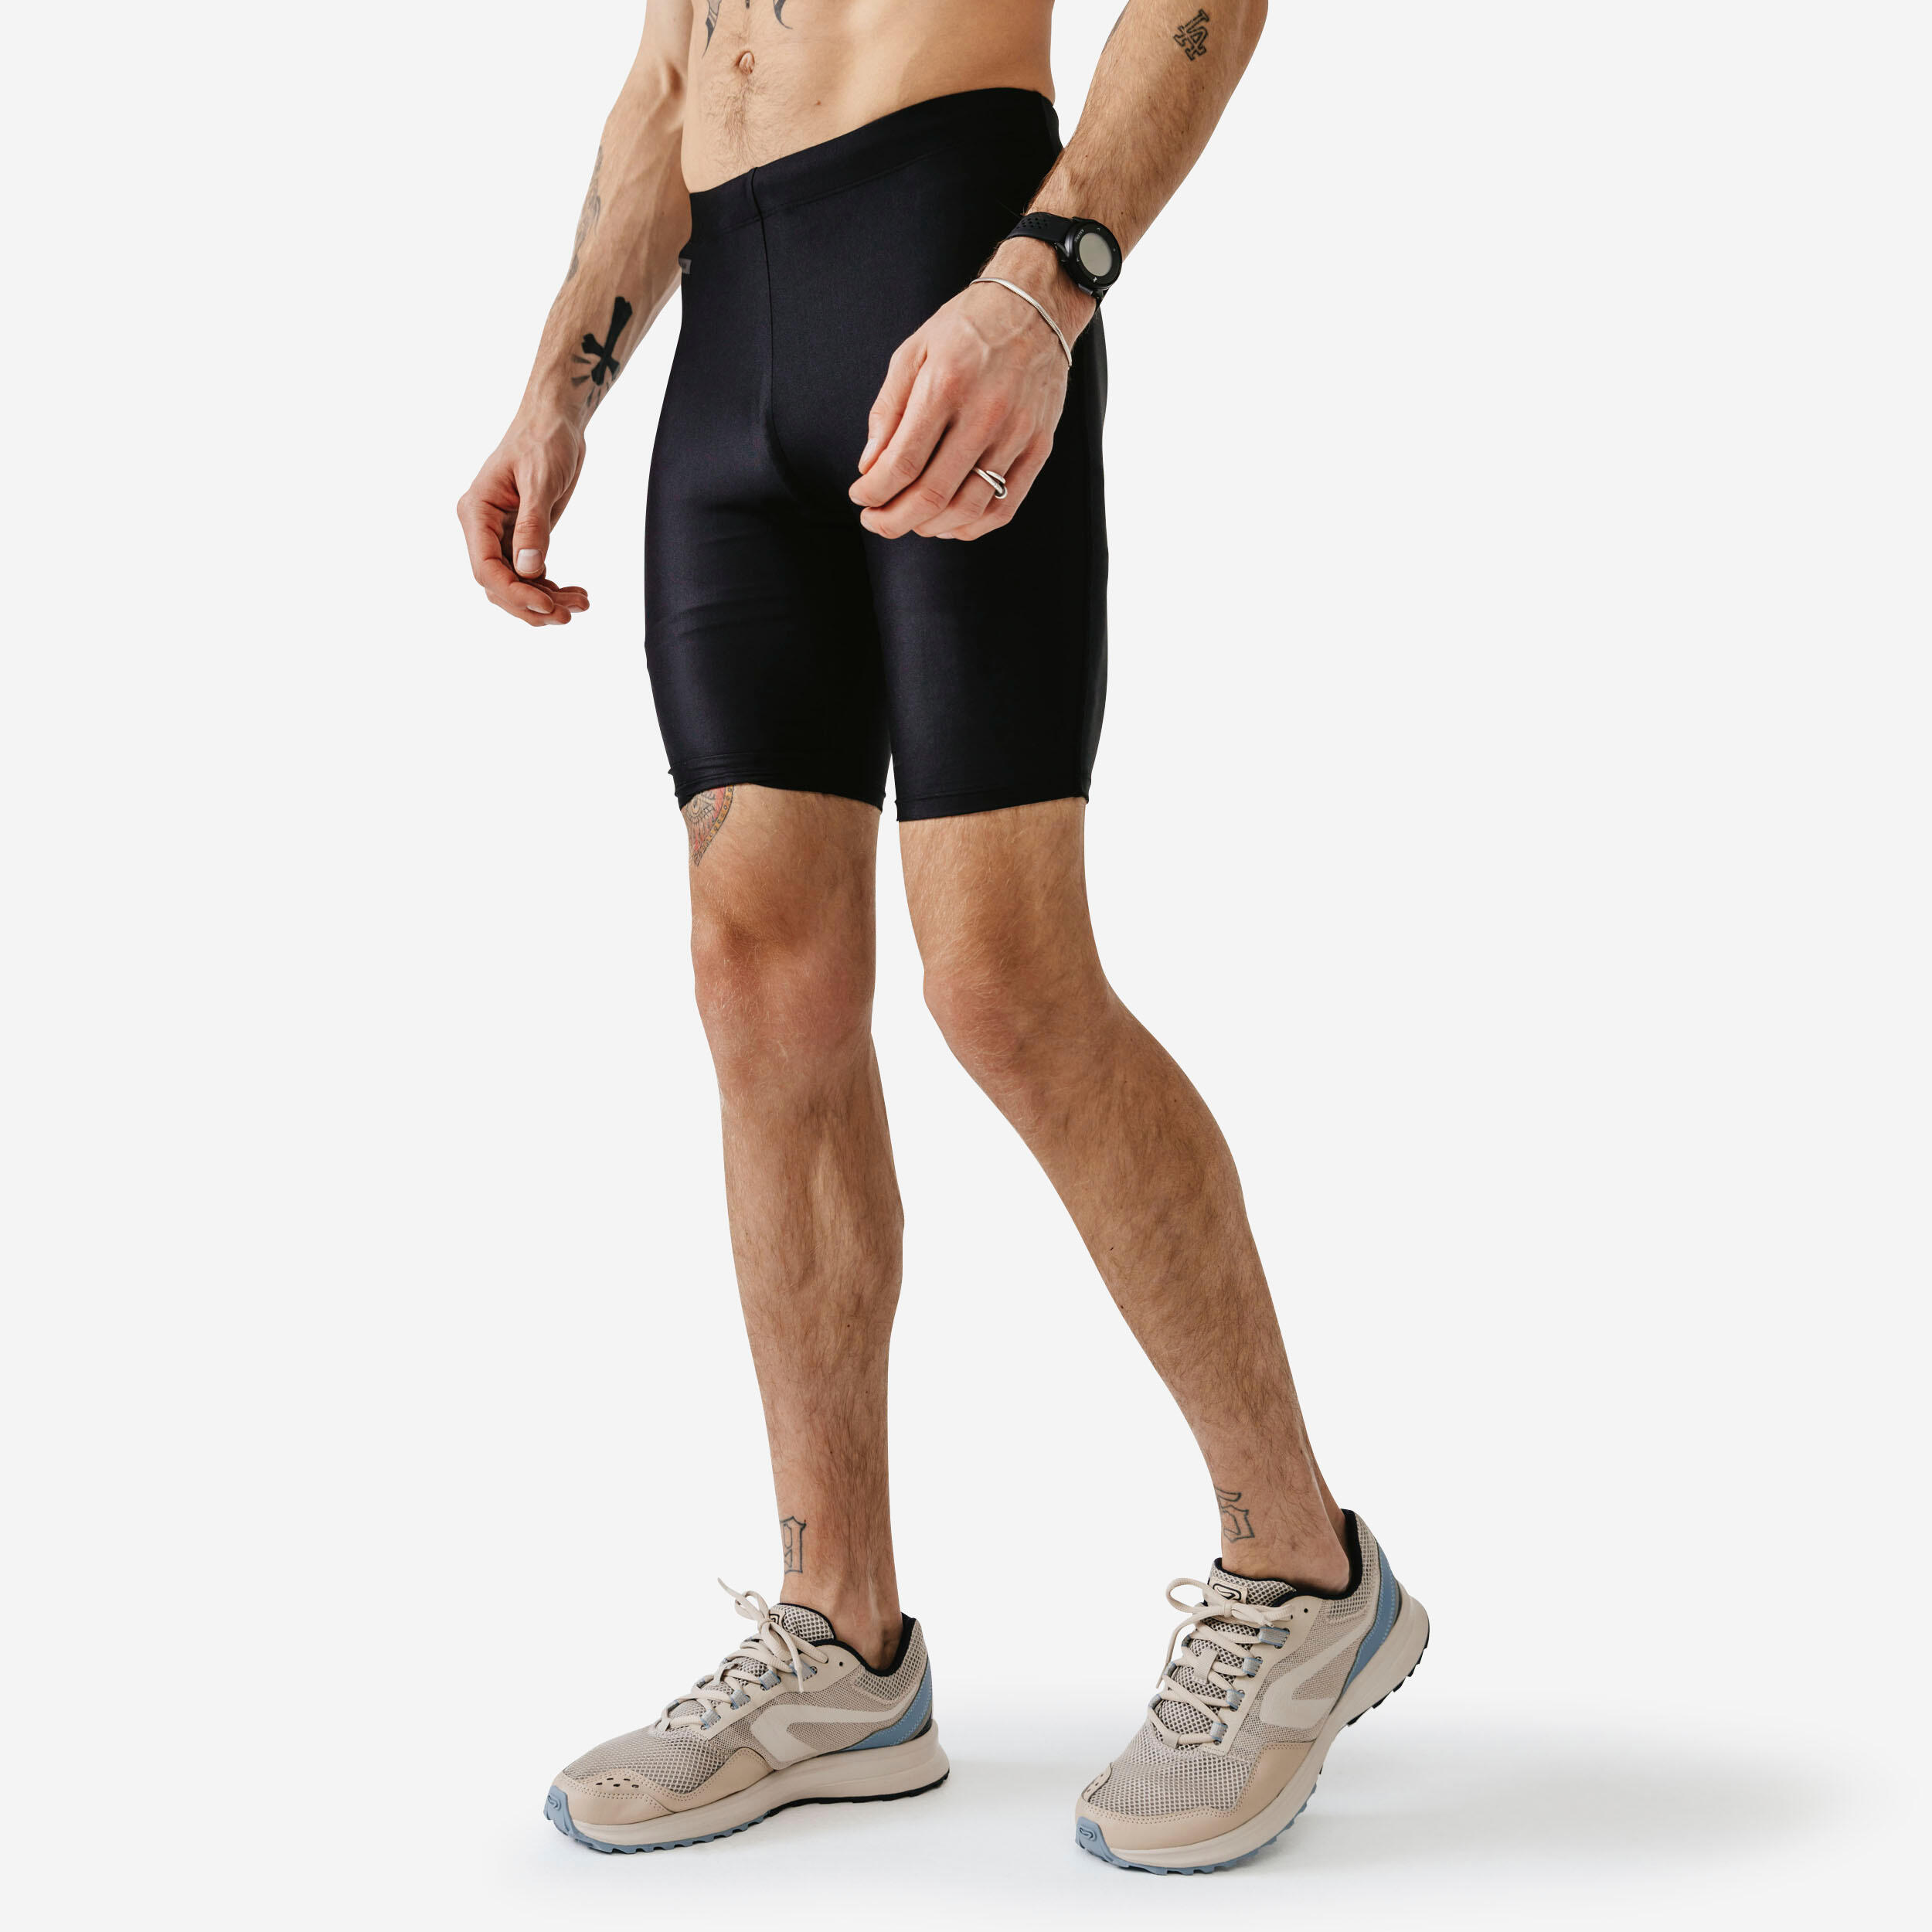 Men's Running Short Tights - Black